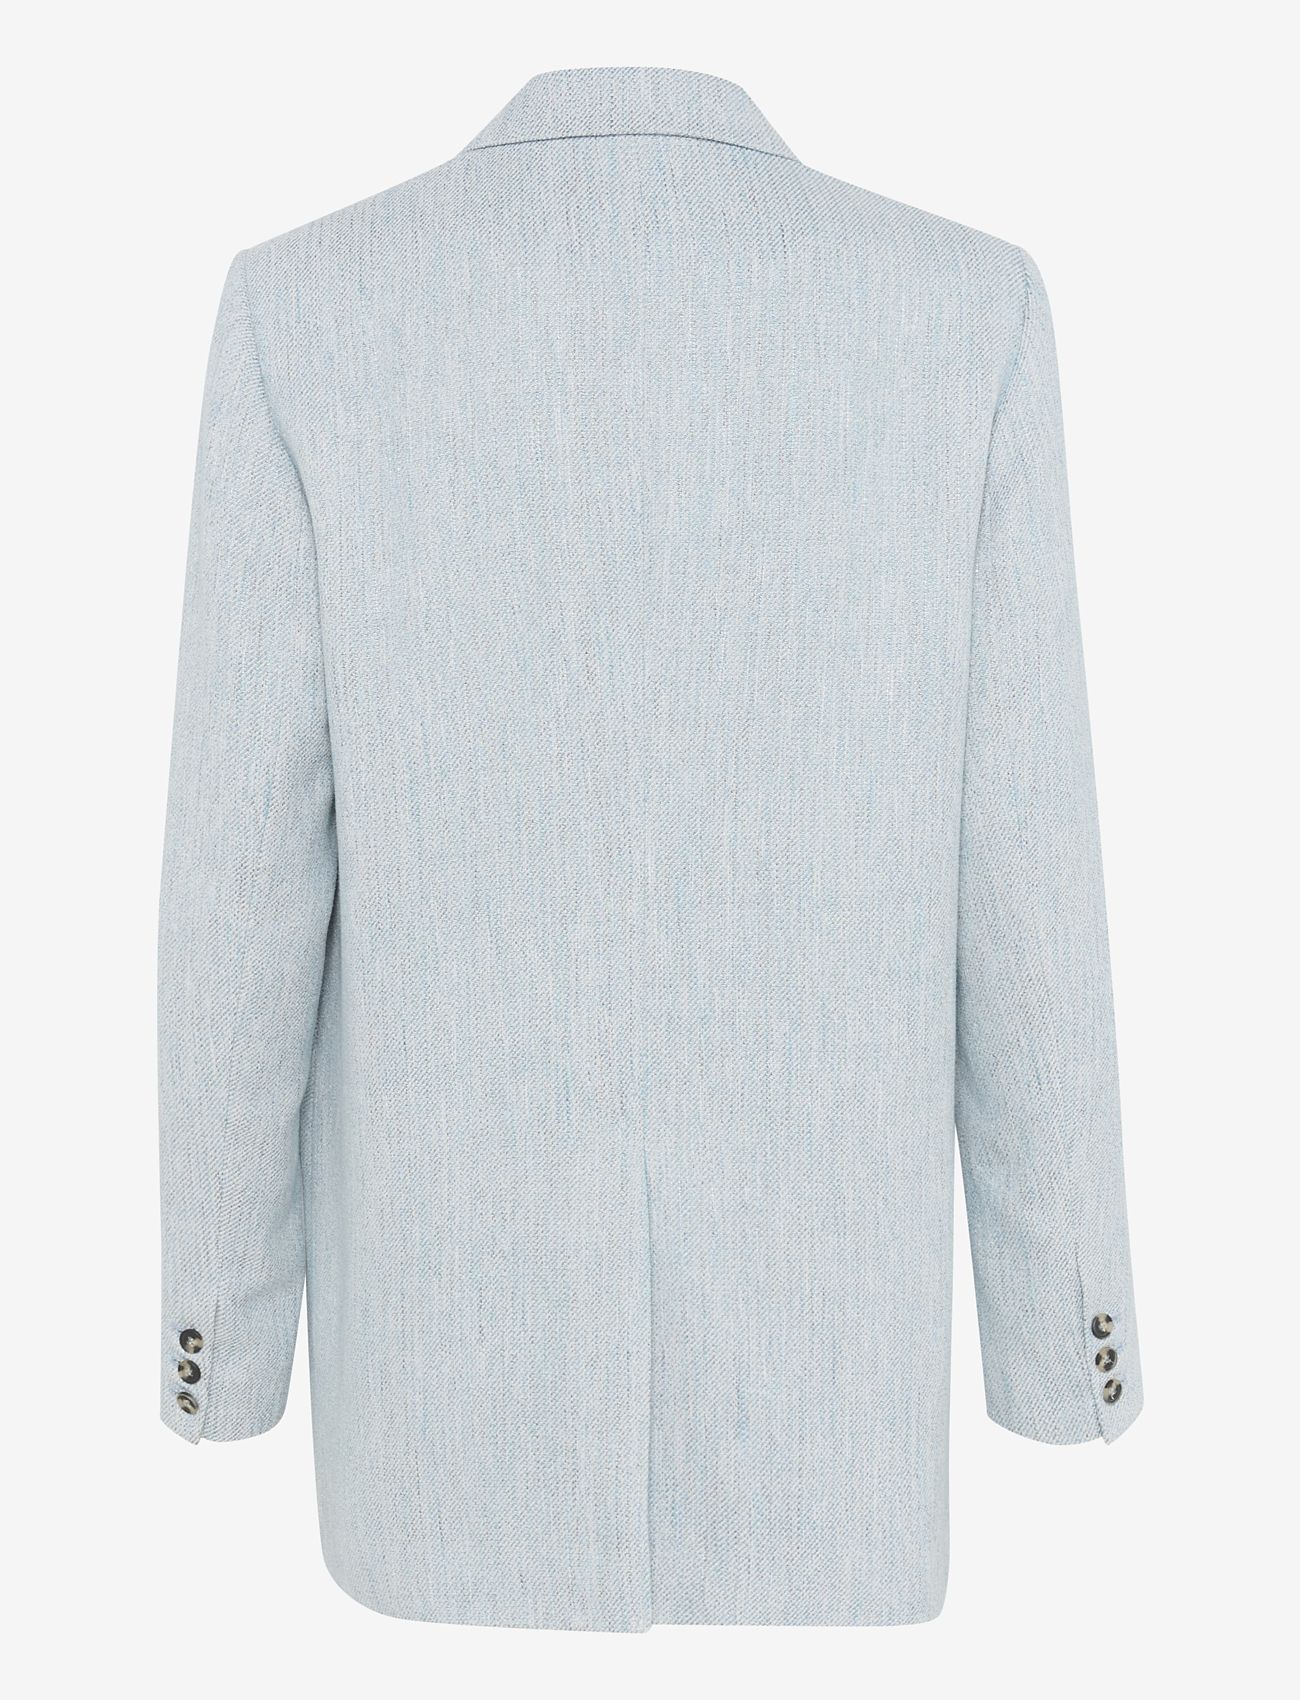 My Essential Wardrobe - ElisaMW Blazer - festklær til outlet-priser - clear sky / off white melange - 1